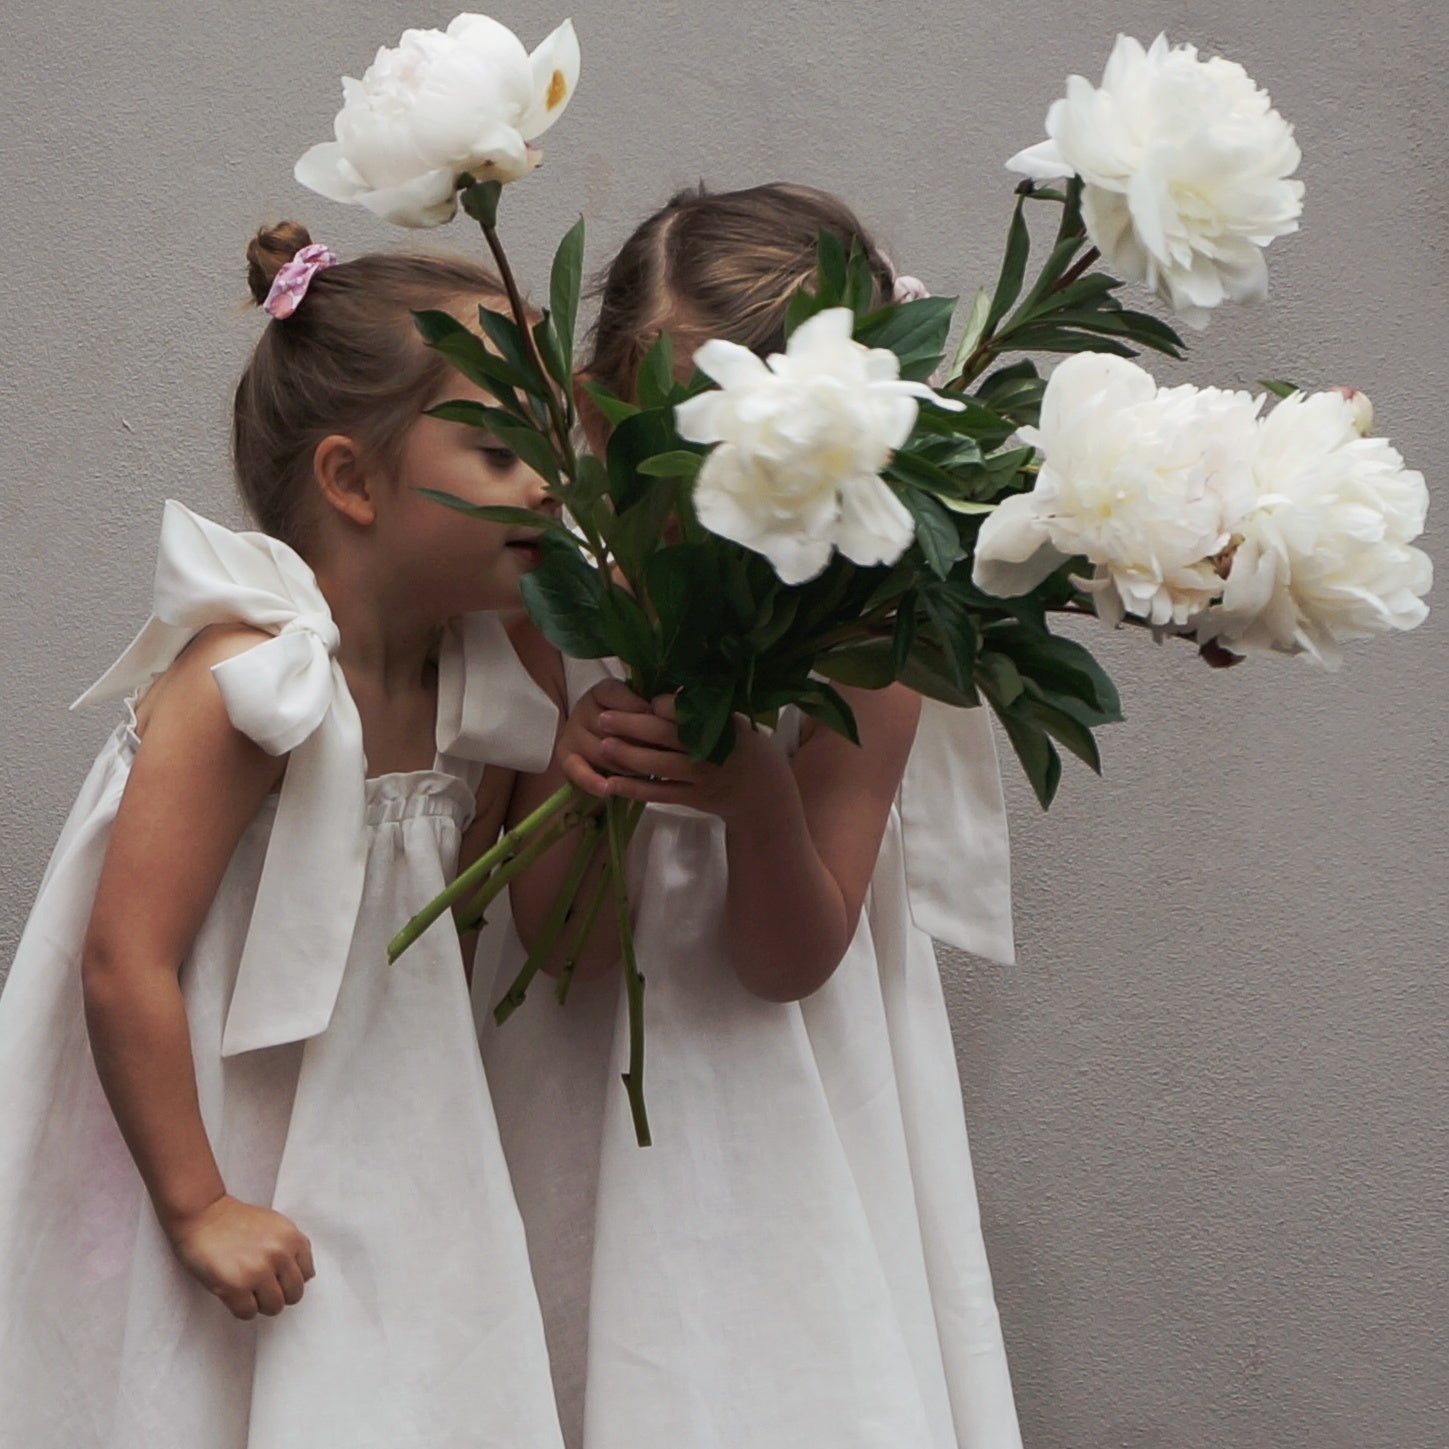 Flower Girl Dresses - Chloé and Amélie